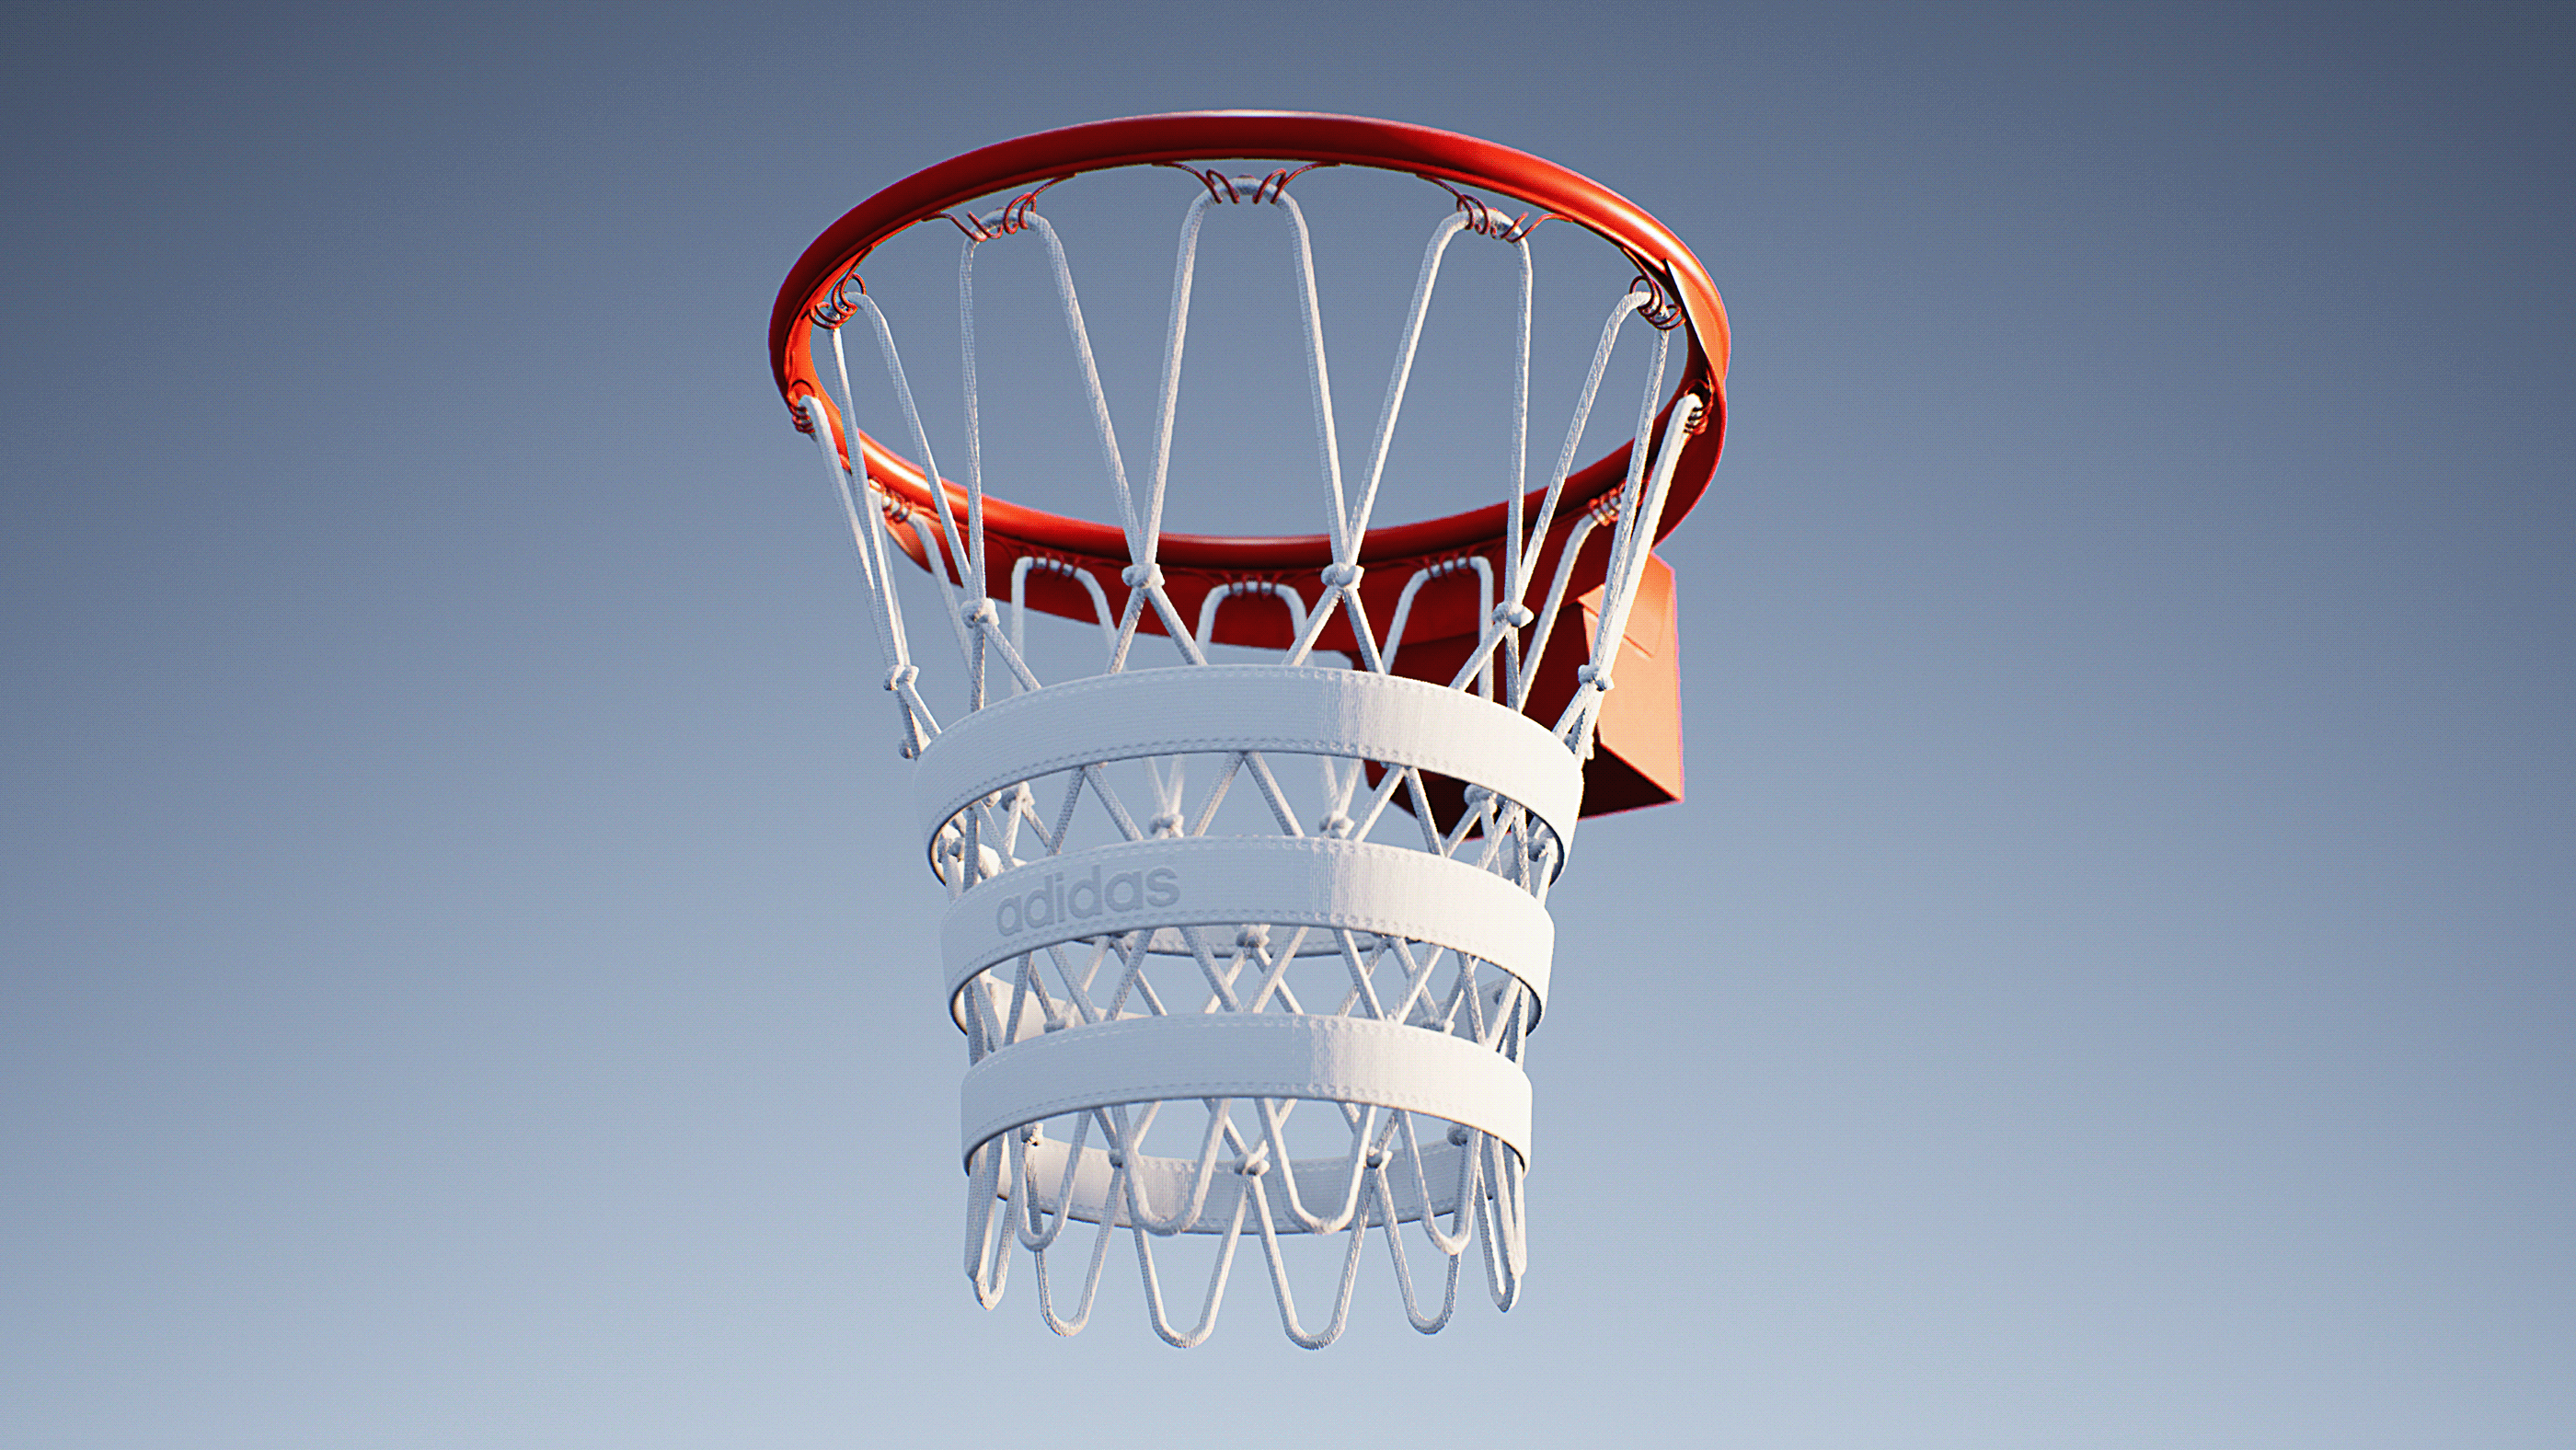 adidas basketball hoop